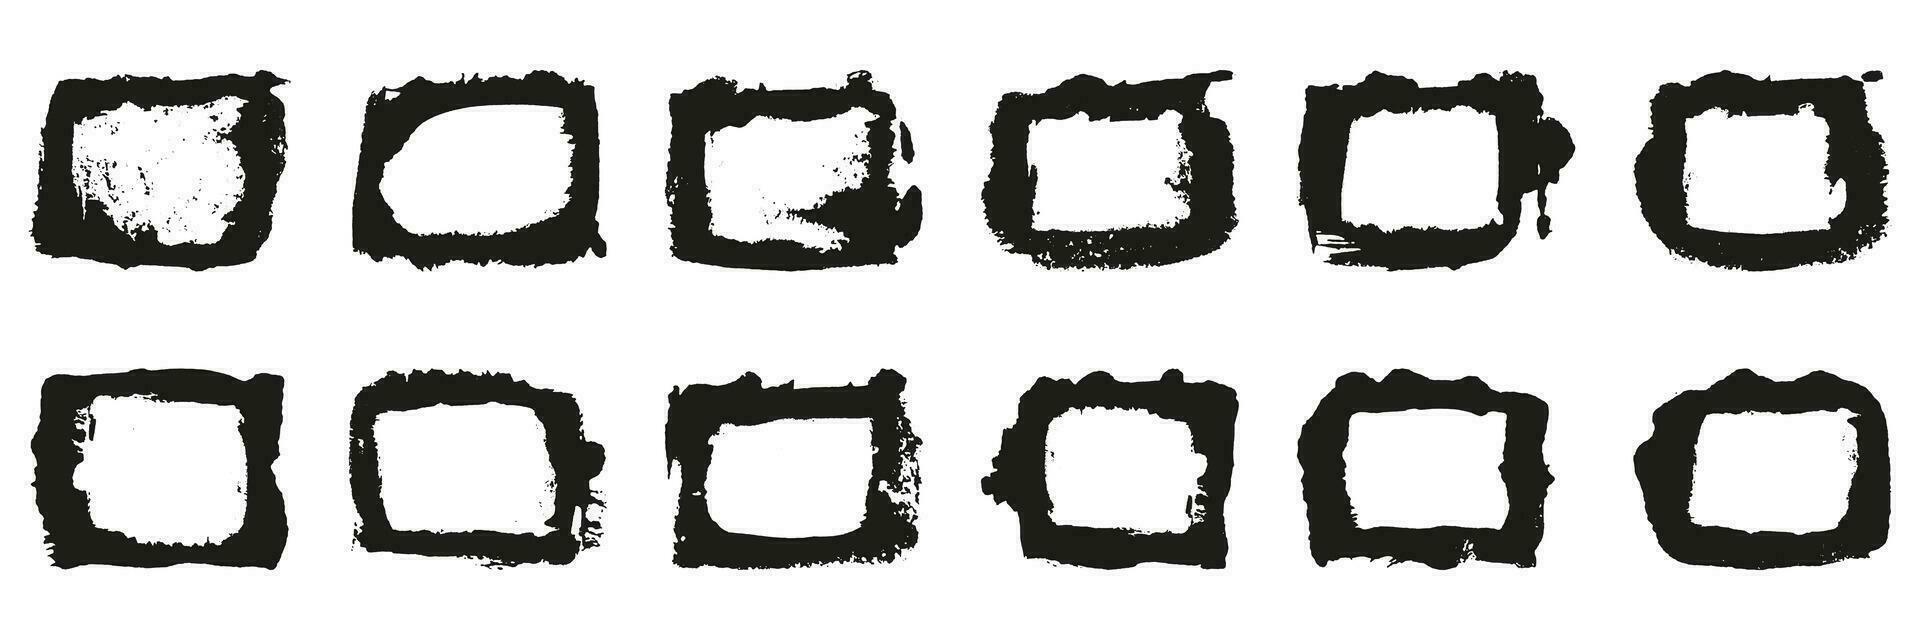 grunge penseelstreek foto kader set. rechthoek kader met abstract grens in plein vorm geven aan. vuil zwart borstel hartinfarct, ruw textuur. abstract grafisch element verzameling. geïsoleerd vector illustratie.